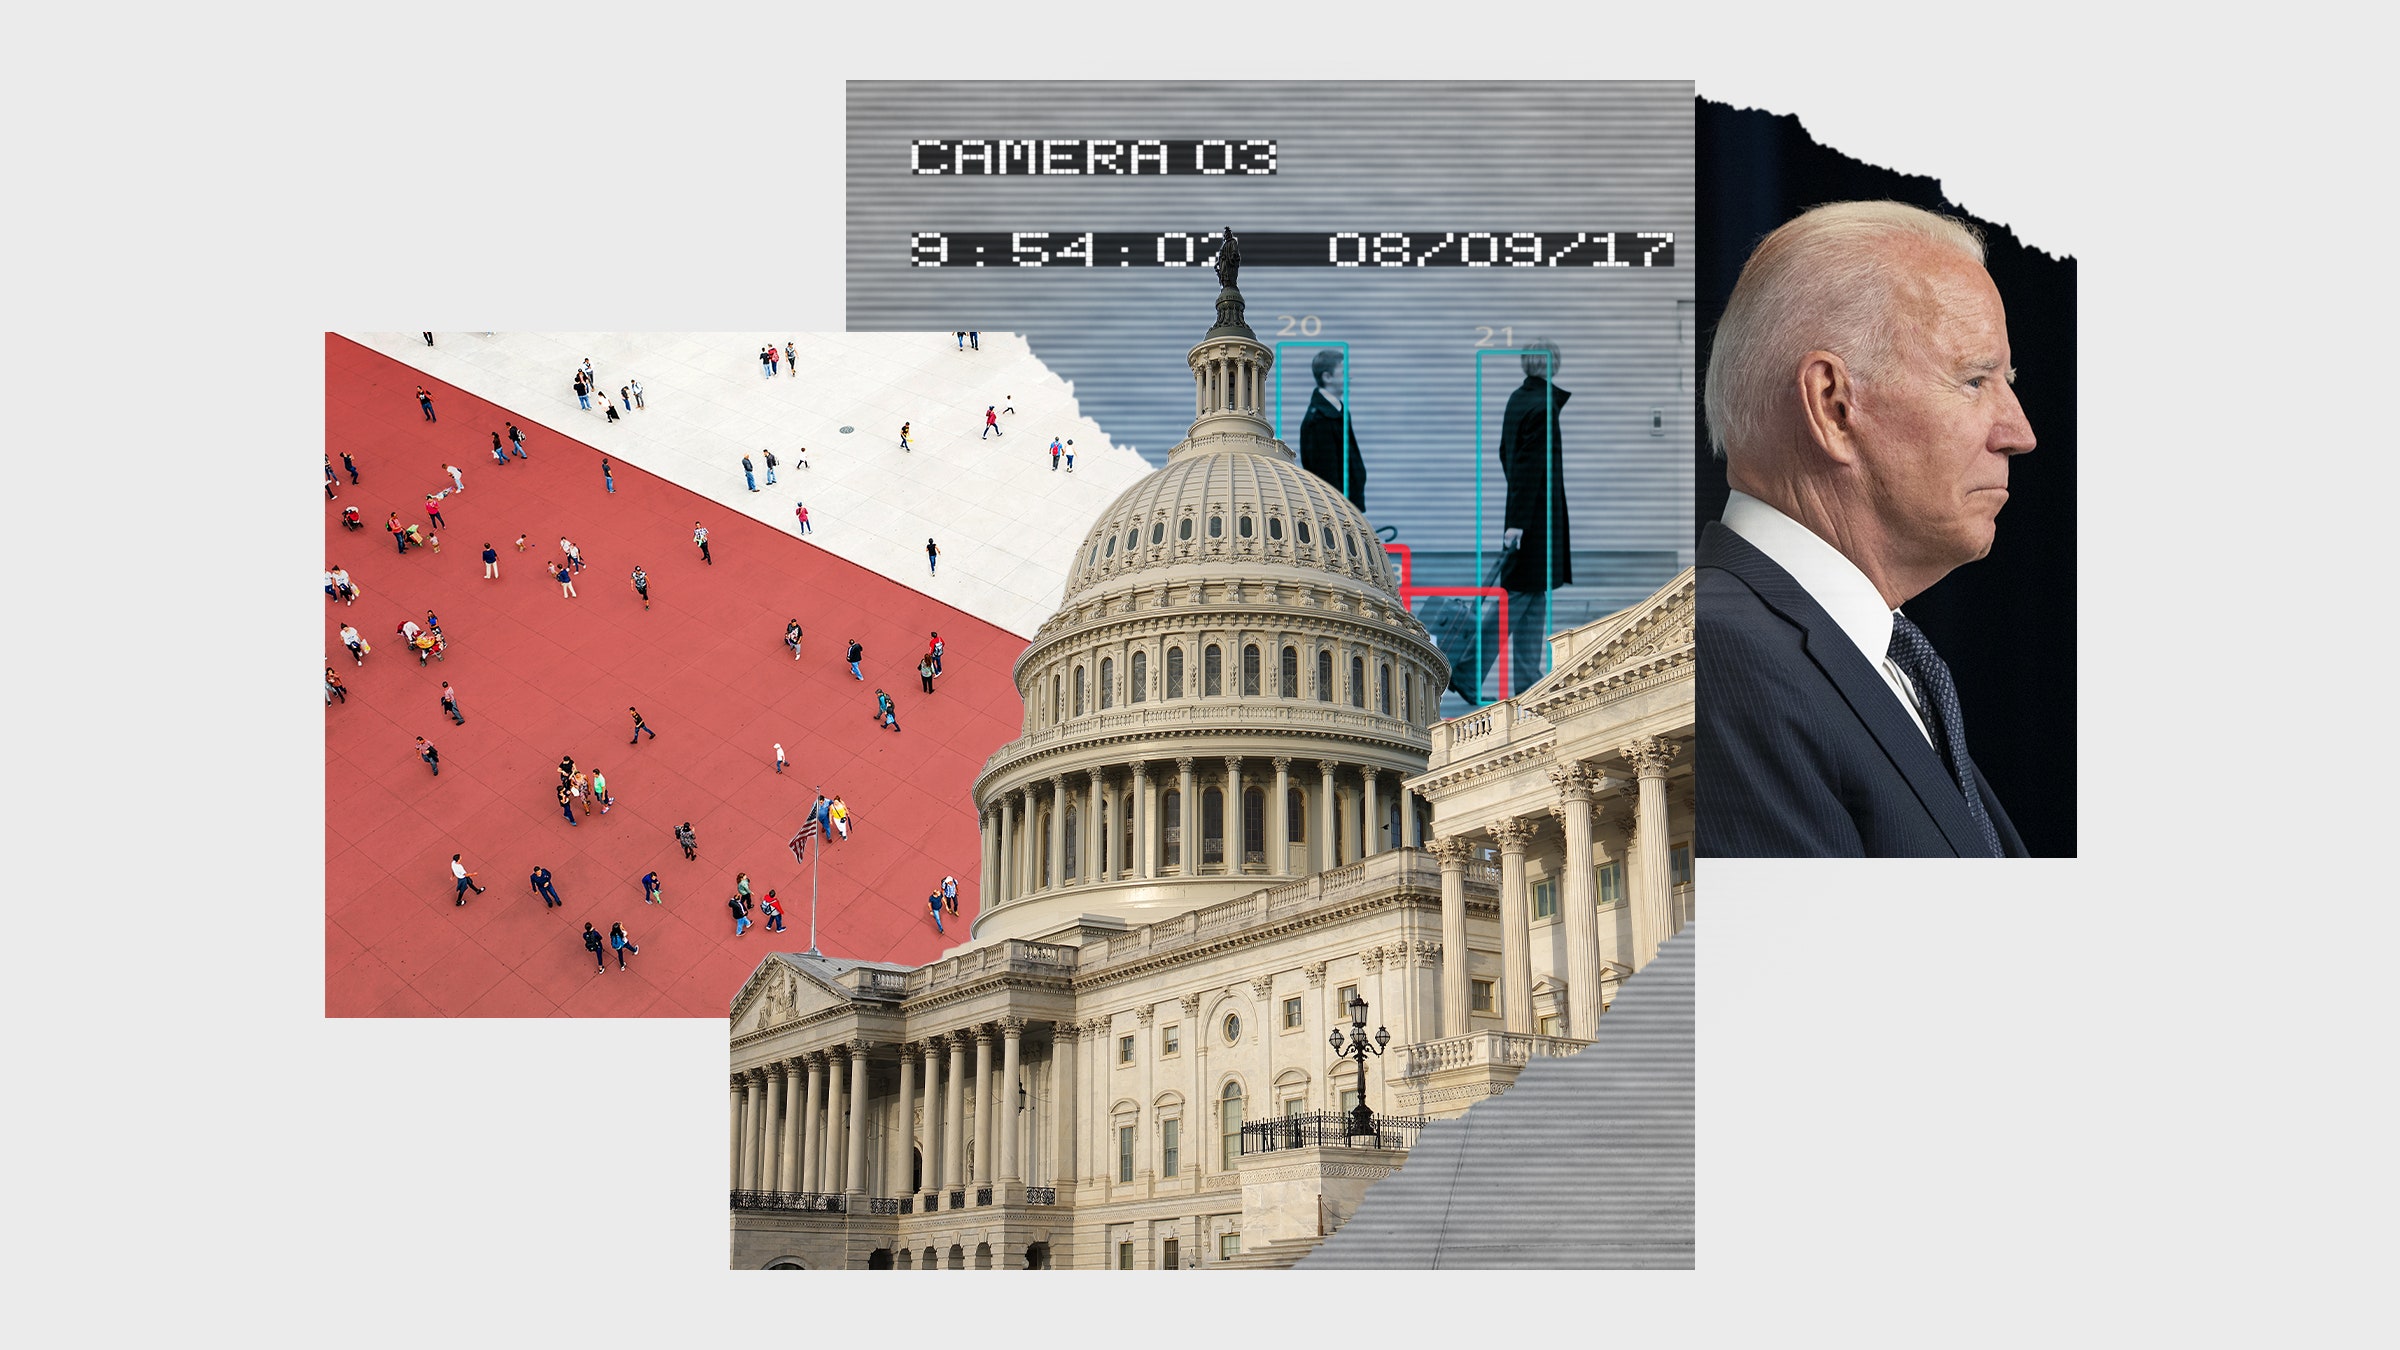 Uma colagem de imagens incluindo o edifício do Capitólio, o presidente Joe Biden e imagens de segurança.